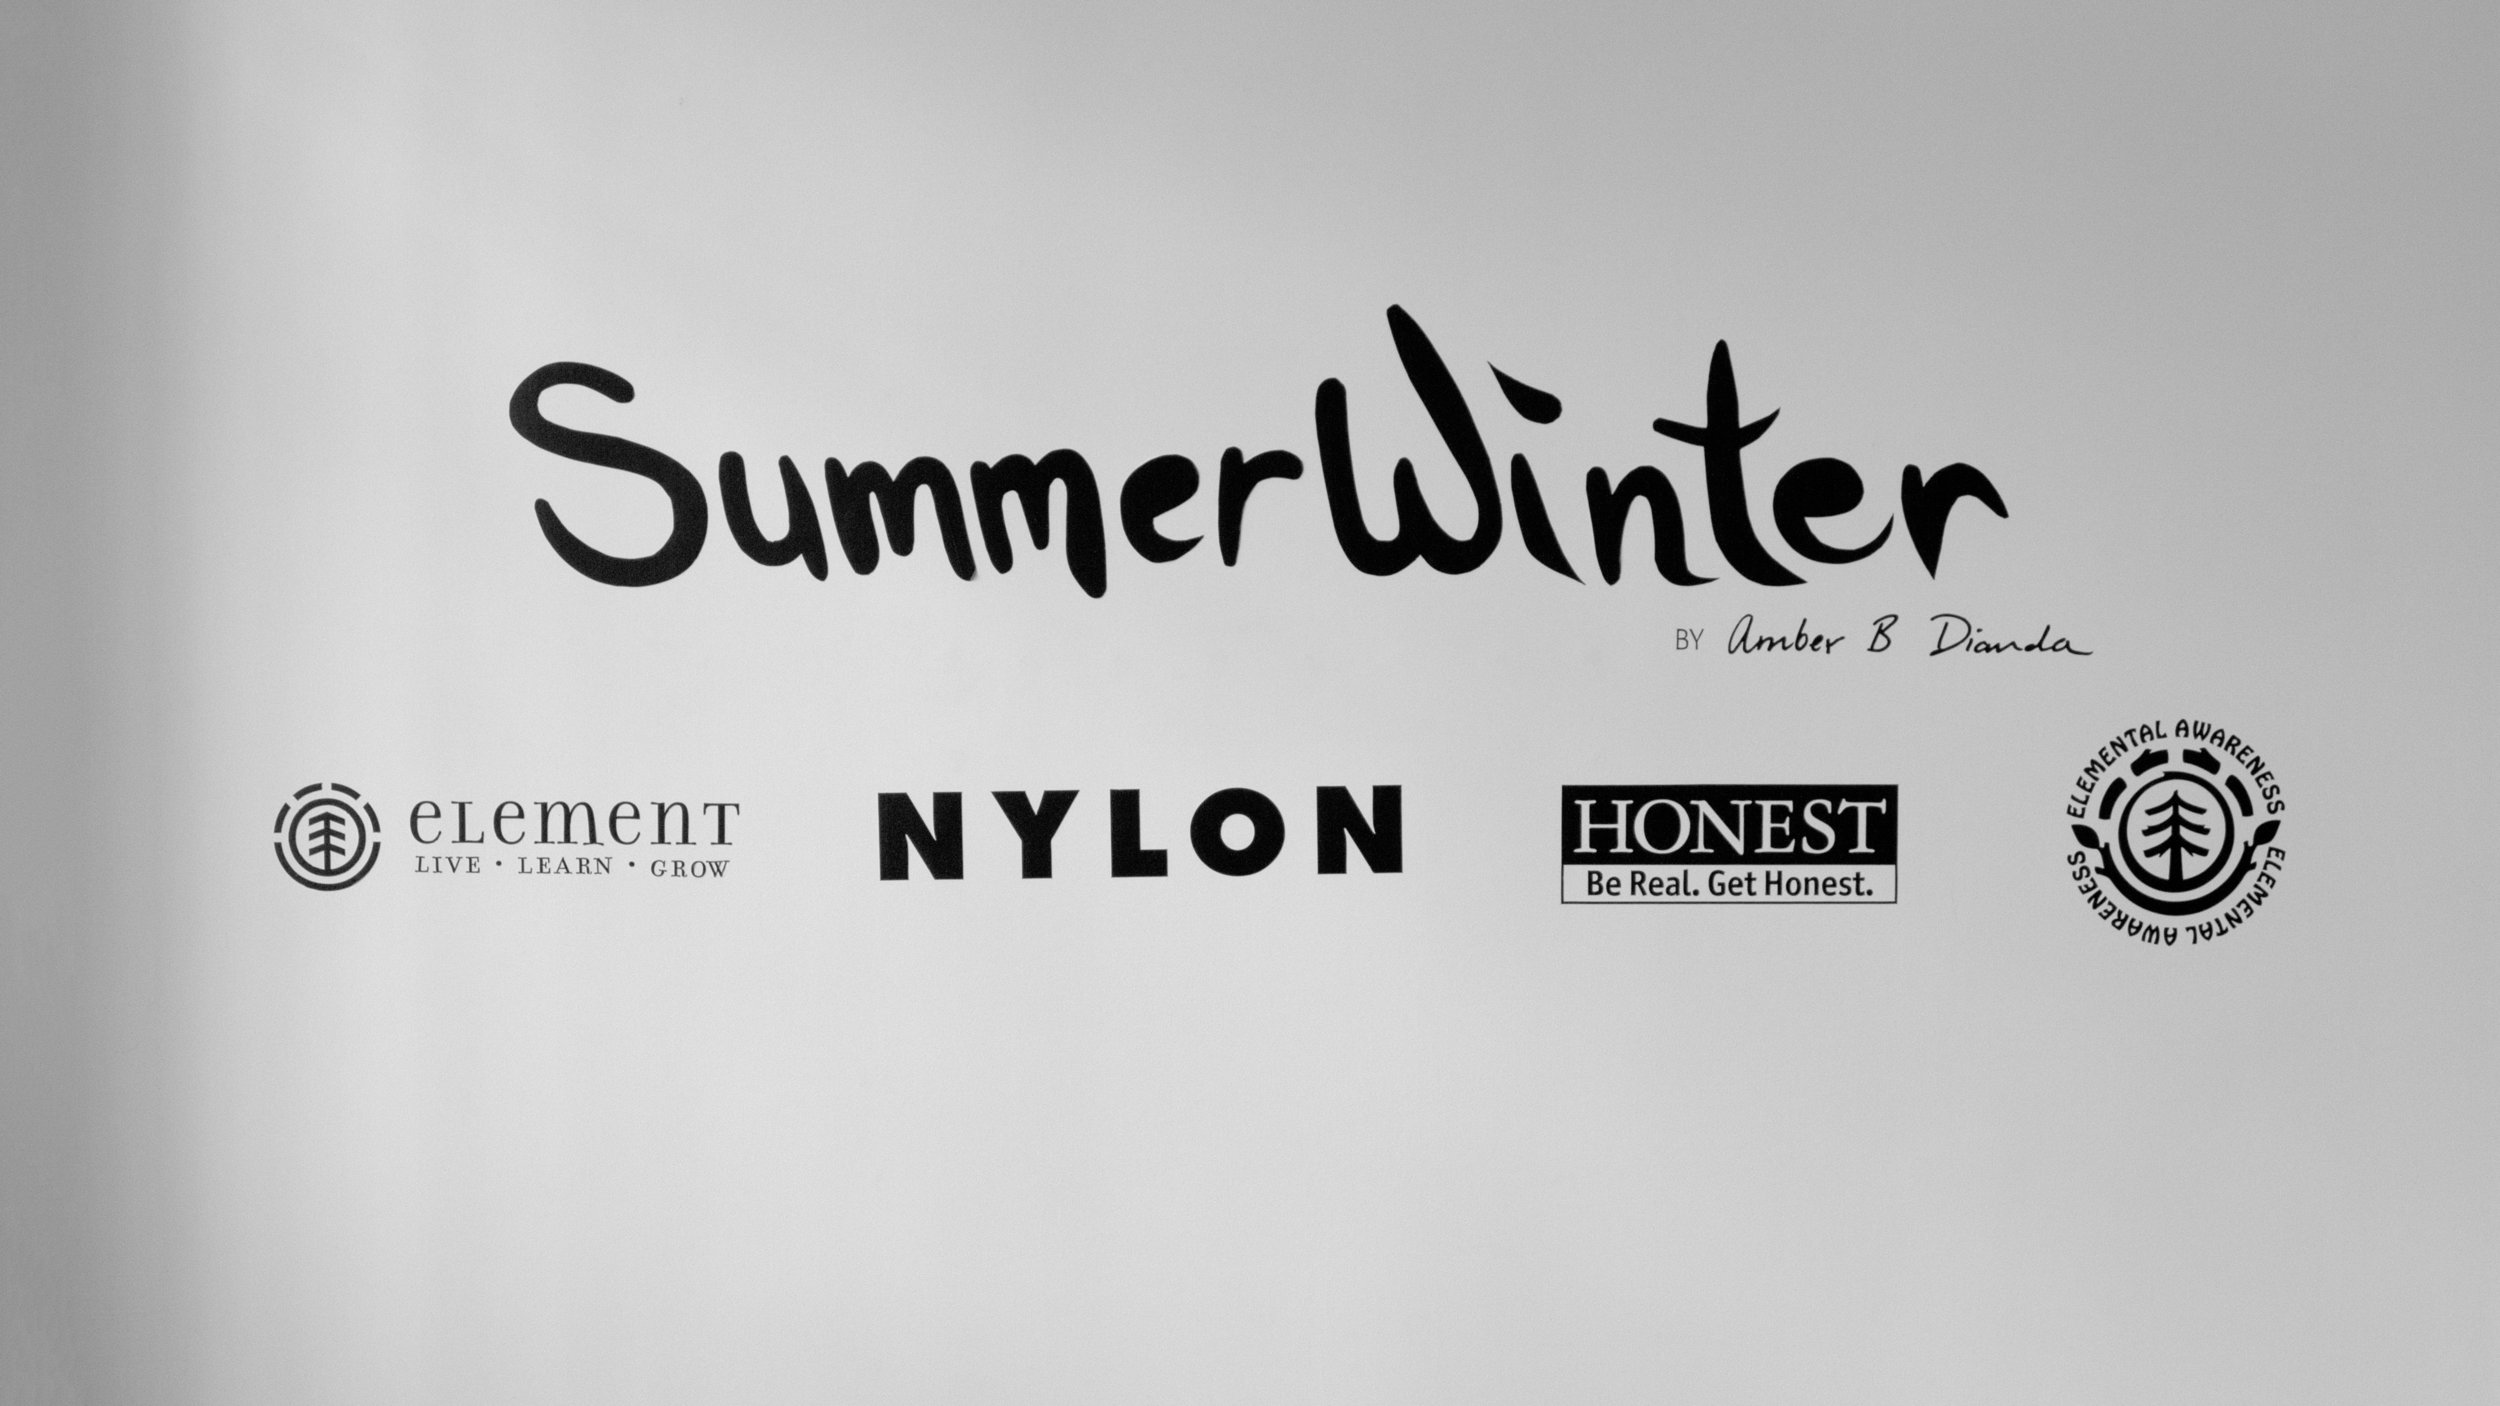 Summerwinter exhibition